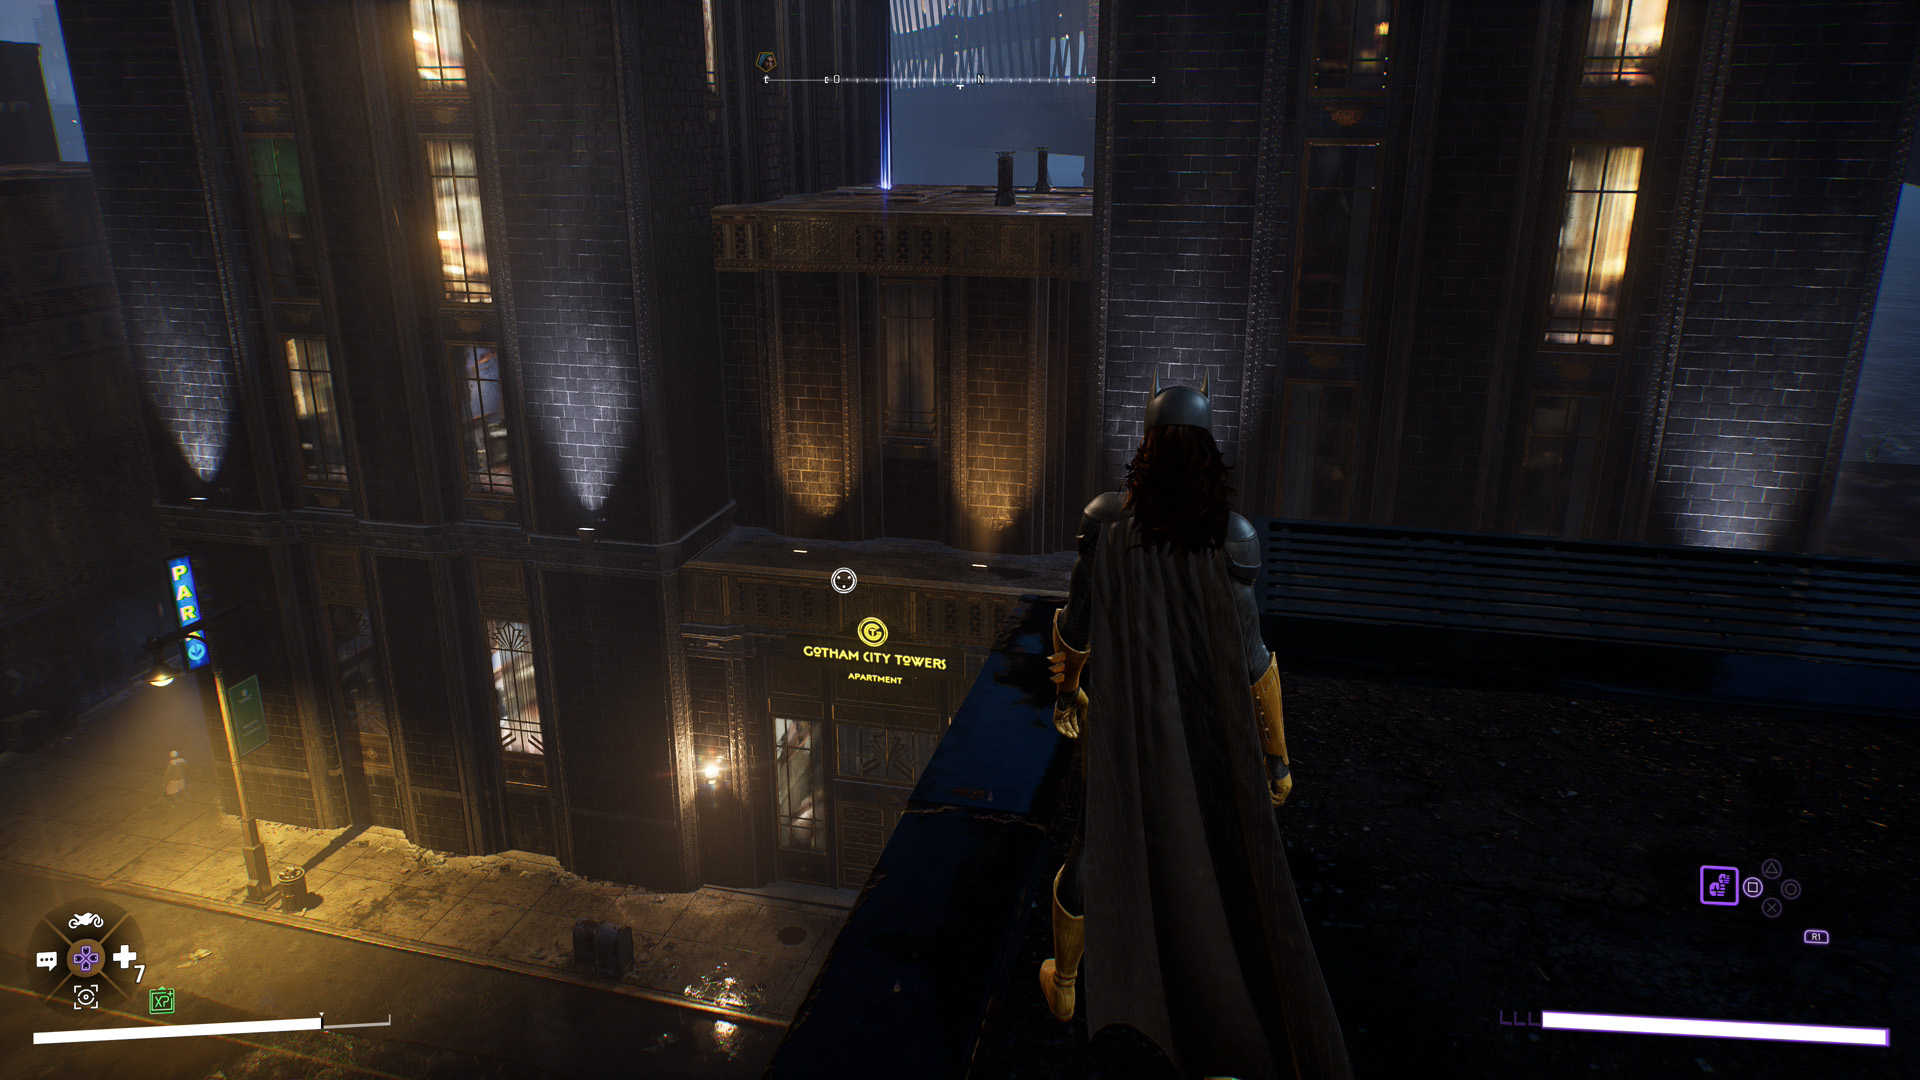 Les batarangs - centre ville - quartier financier - gotham city towers apartment - gotham knights